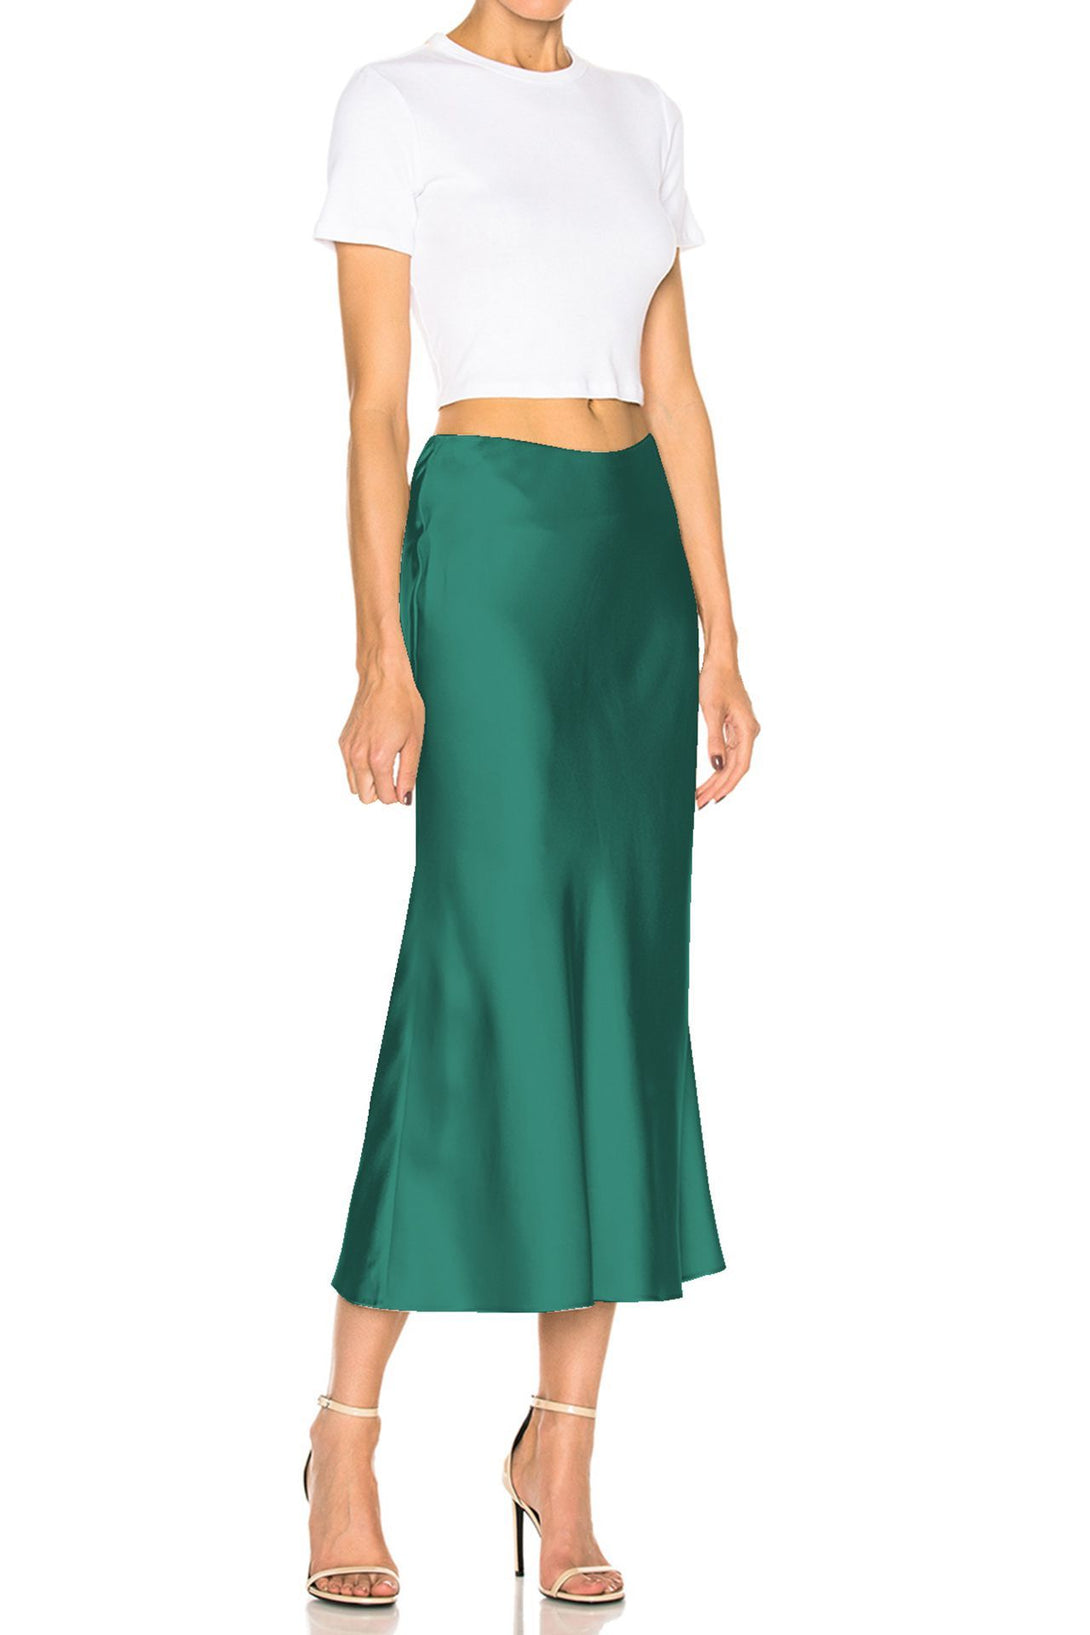 Kyle-Women-Designer-Green-Skirt